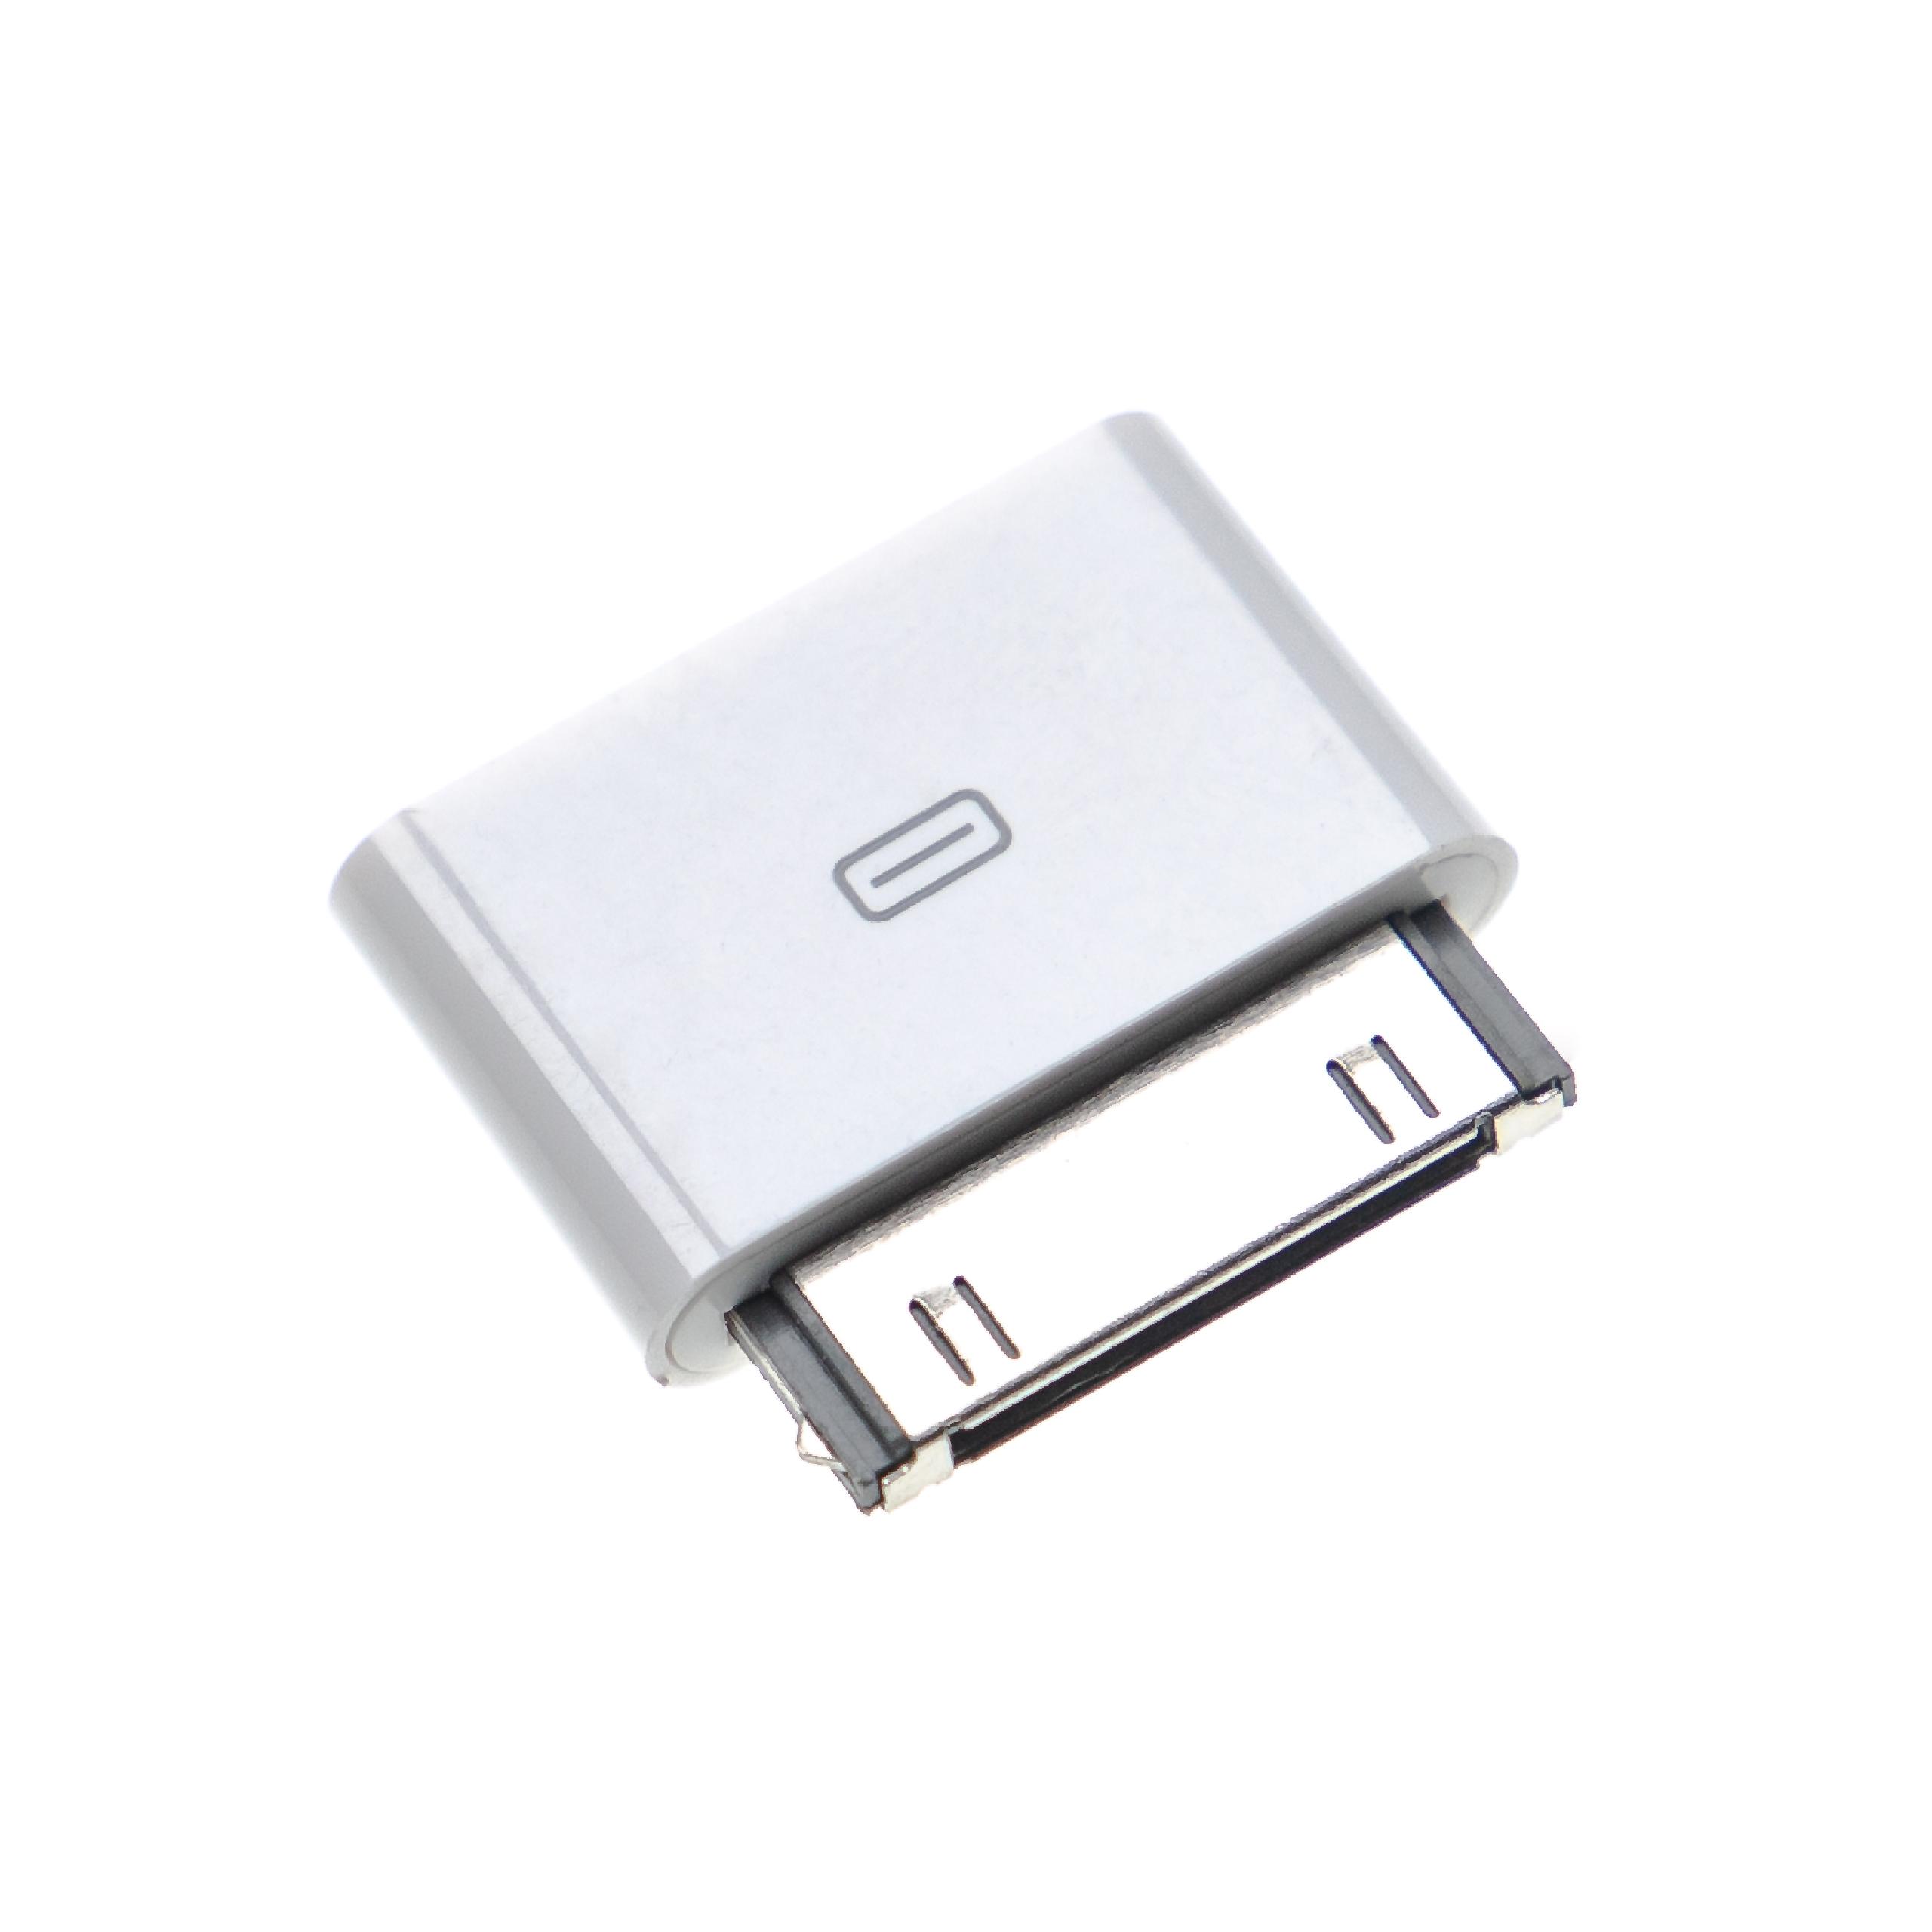 vhbw Adaptador compatible con Apple iPhone móvil, smartphone - Adaptador USB Micro a conector 30 pines blanco